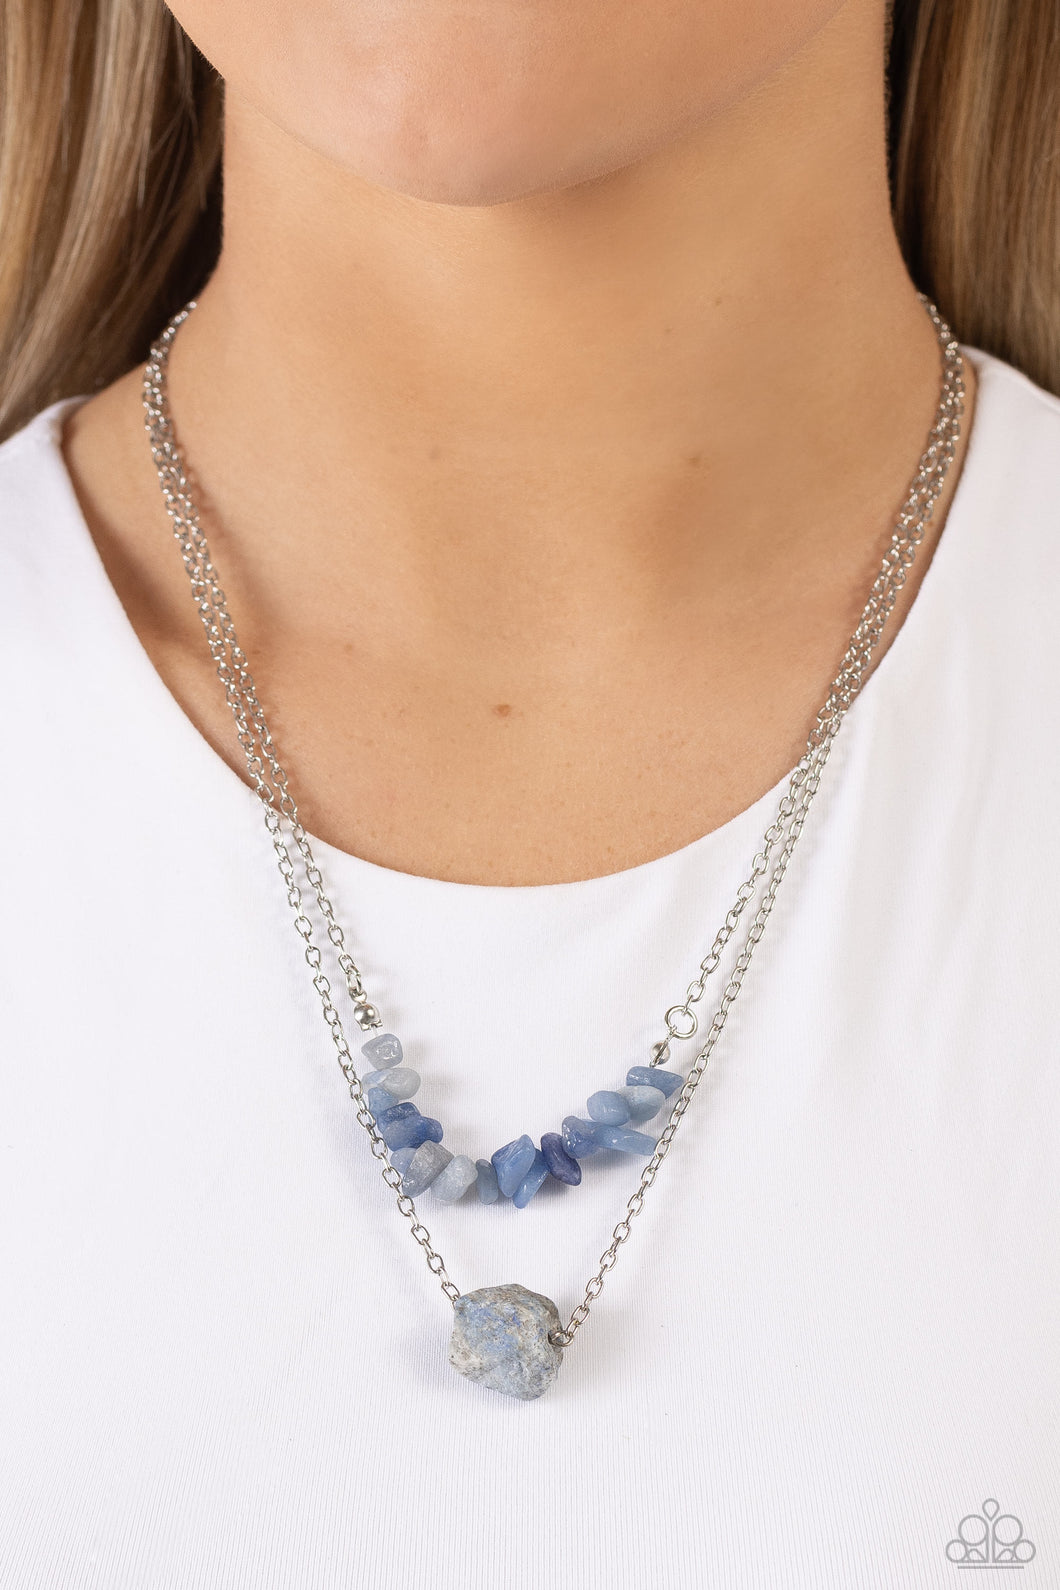 Paparazzi “Chiseled Caliber” Blue Necklace Earring Set